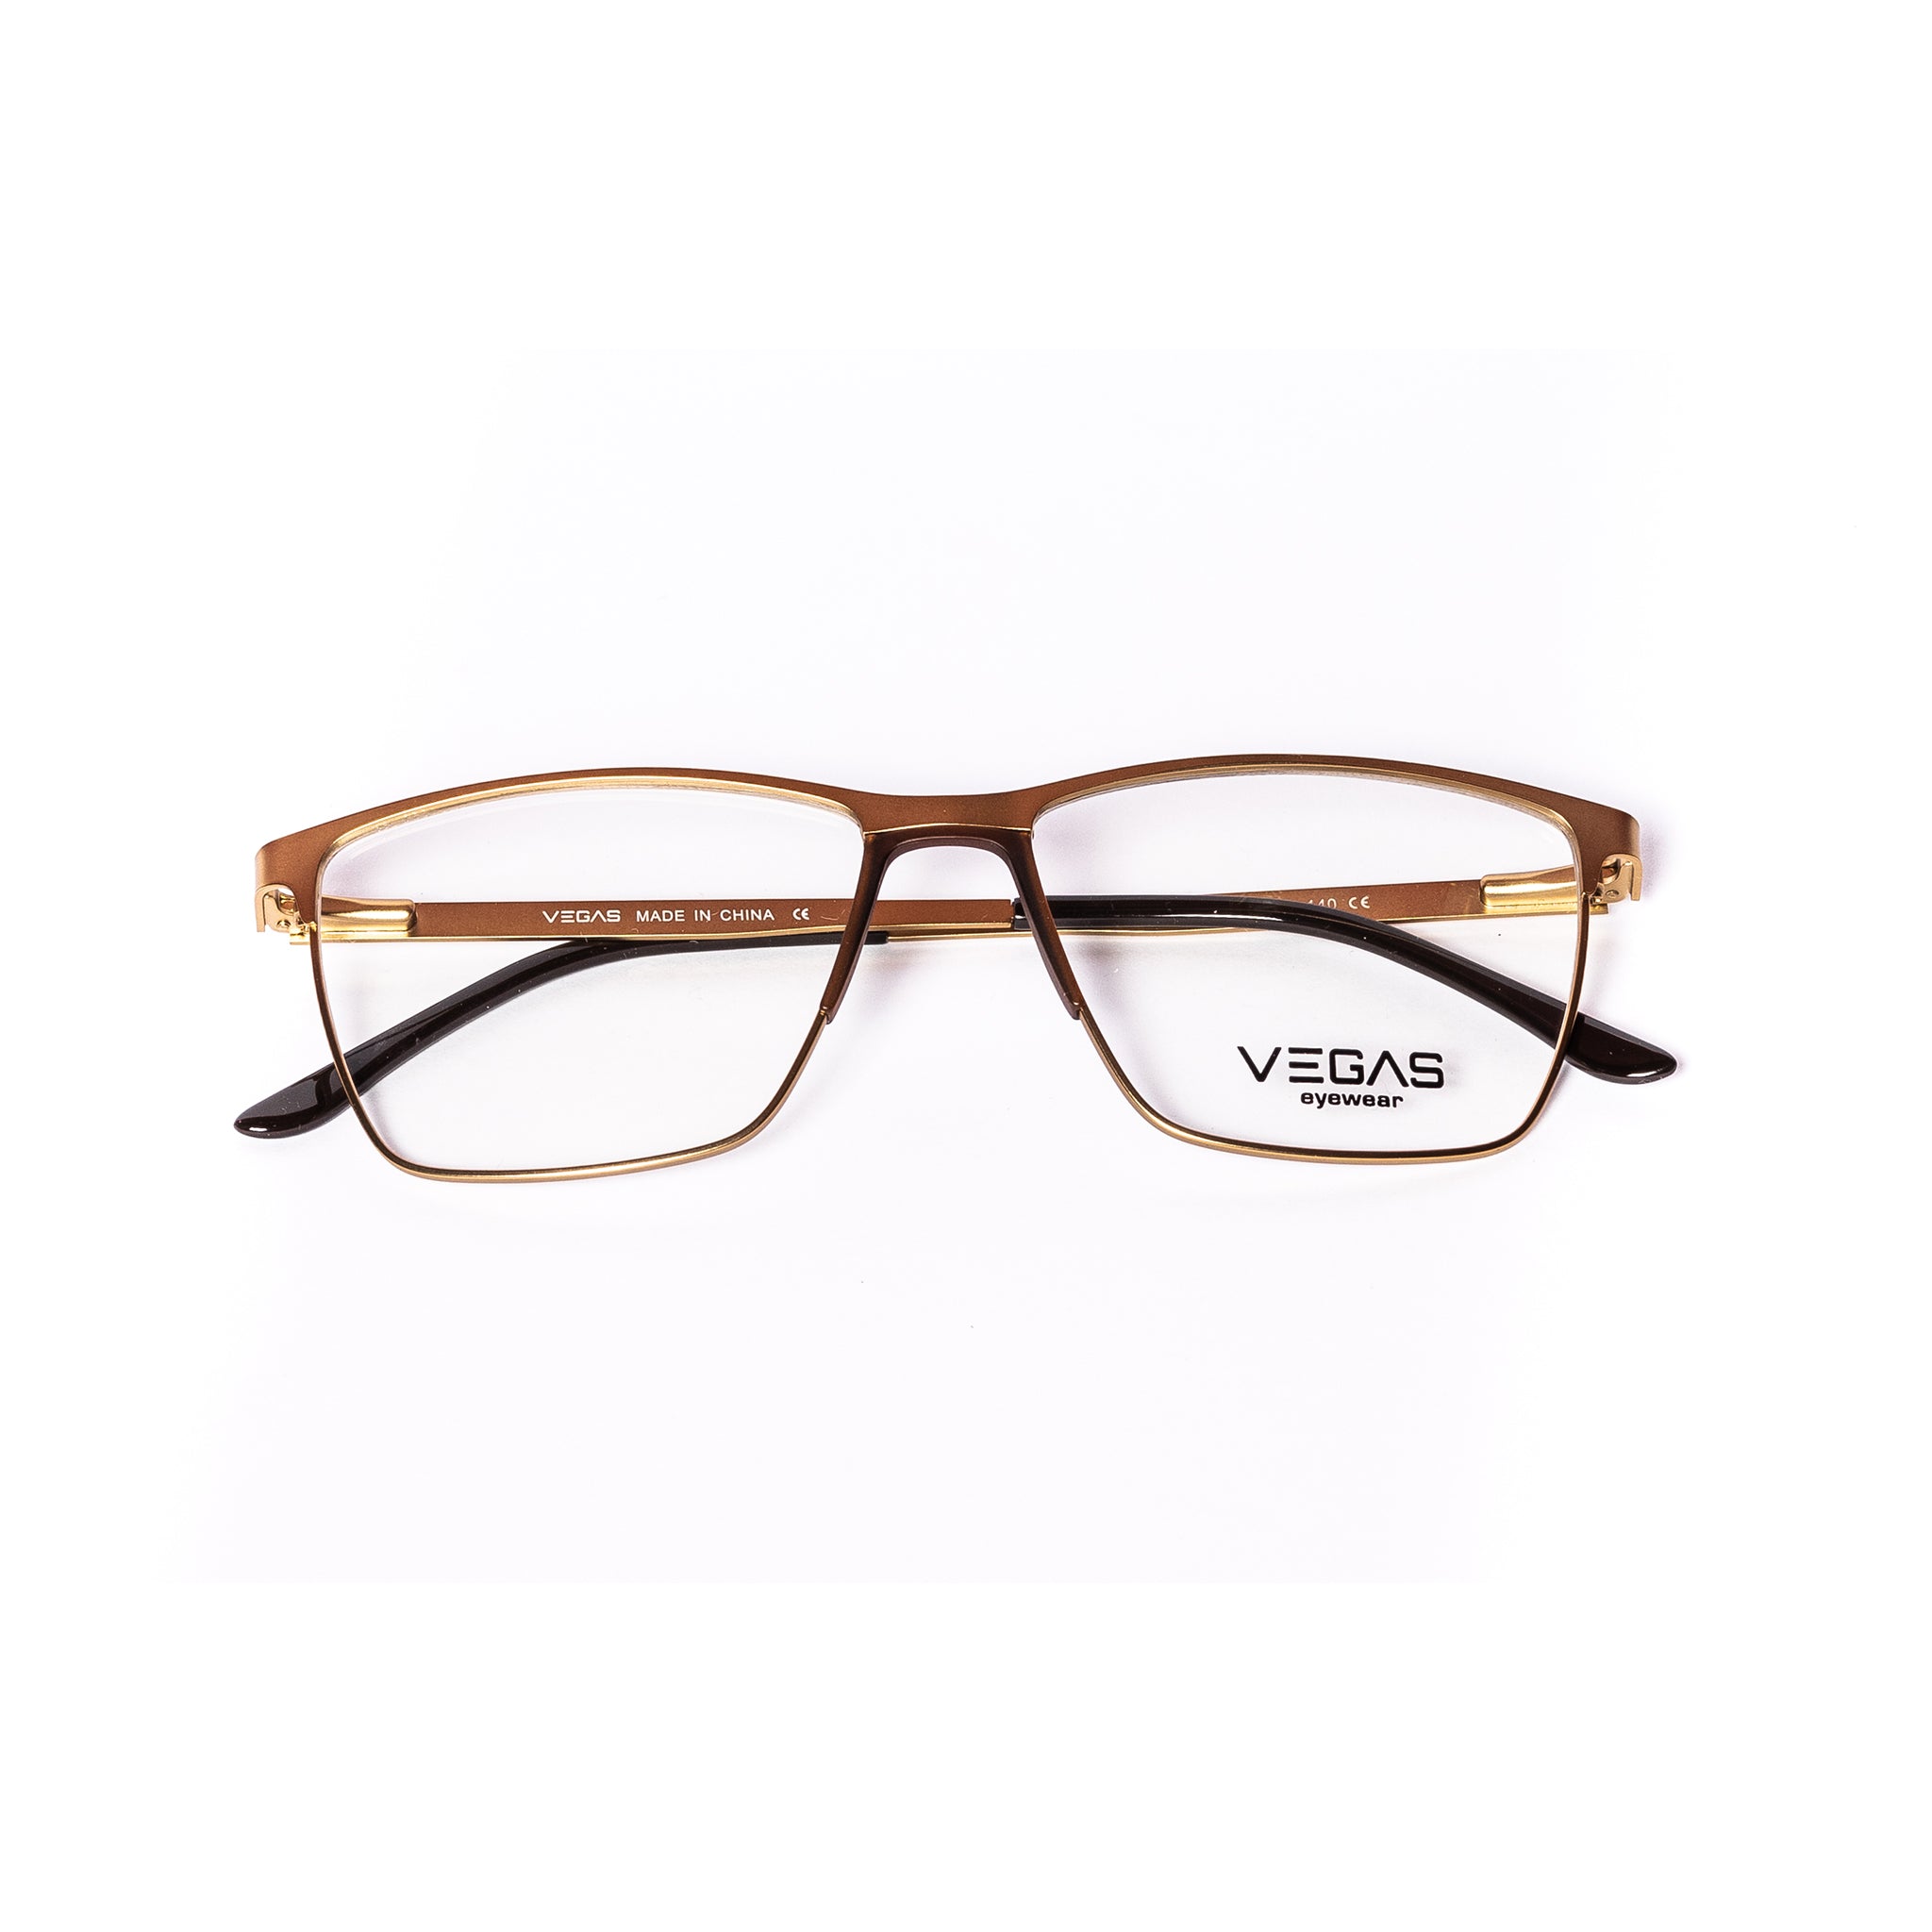 VEGAS P8295 - COC Eyewear